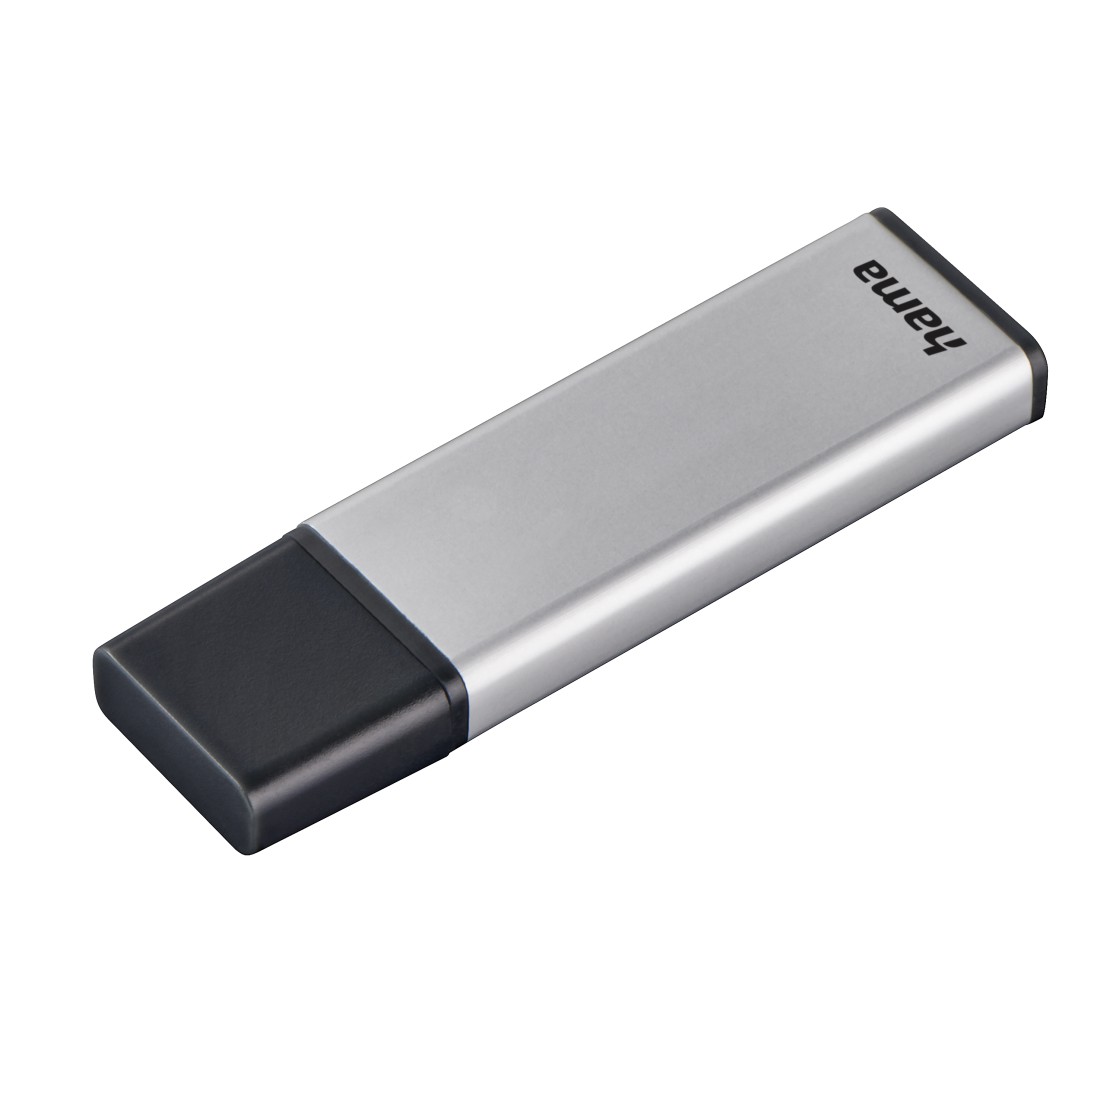 00181052 Hama "Classic" USB Stick, USB 3.0, 32 GB, 70 MB/s, silver